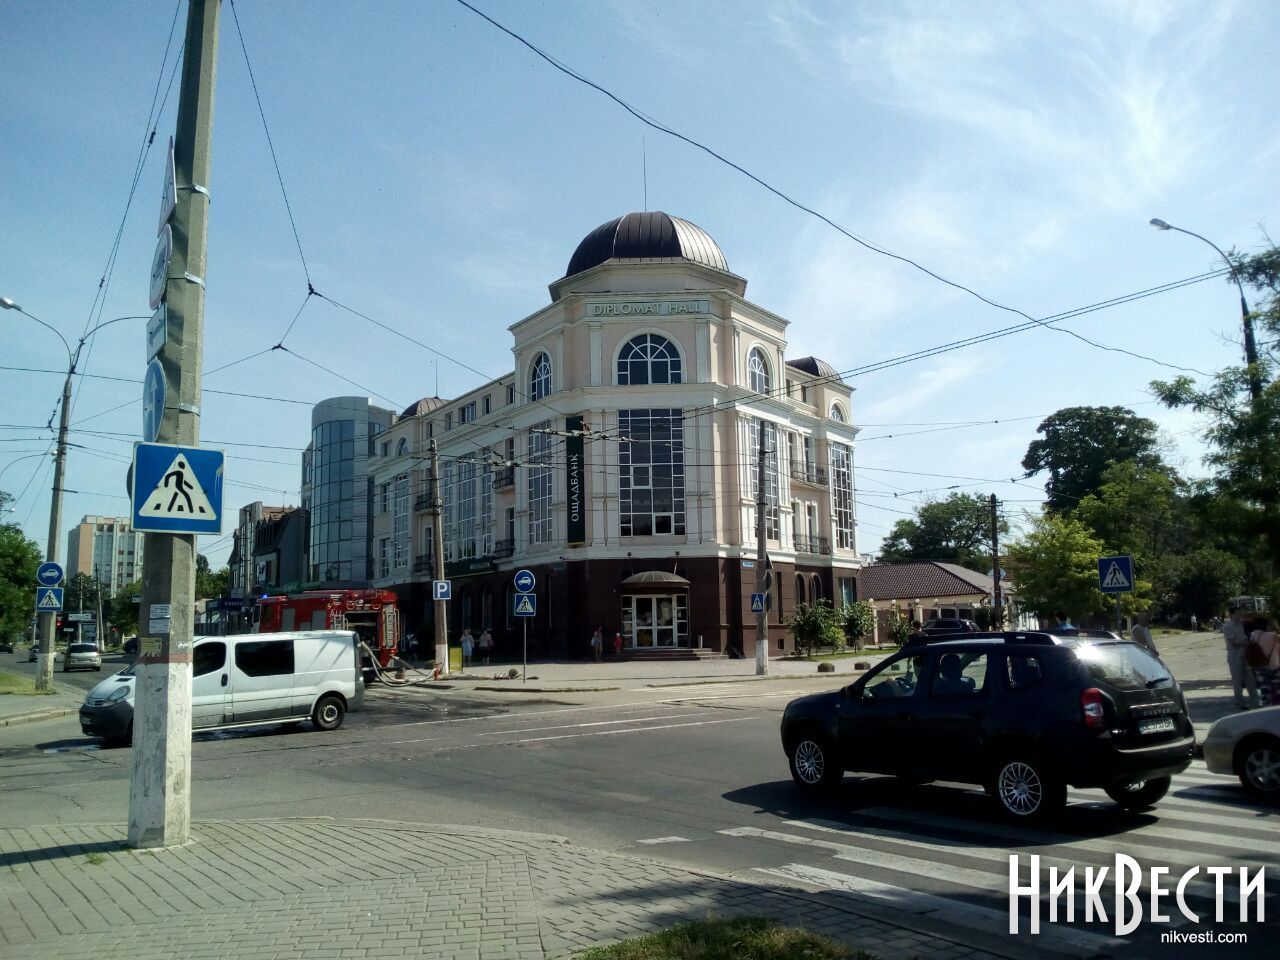 У Миколаєві шукають бомби у зоопарку, в соборі і аеропорту (фото)